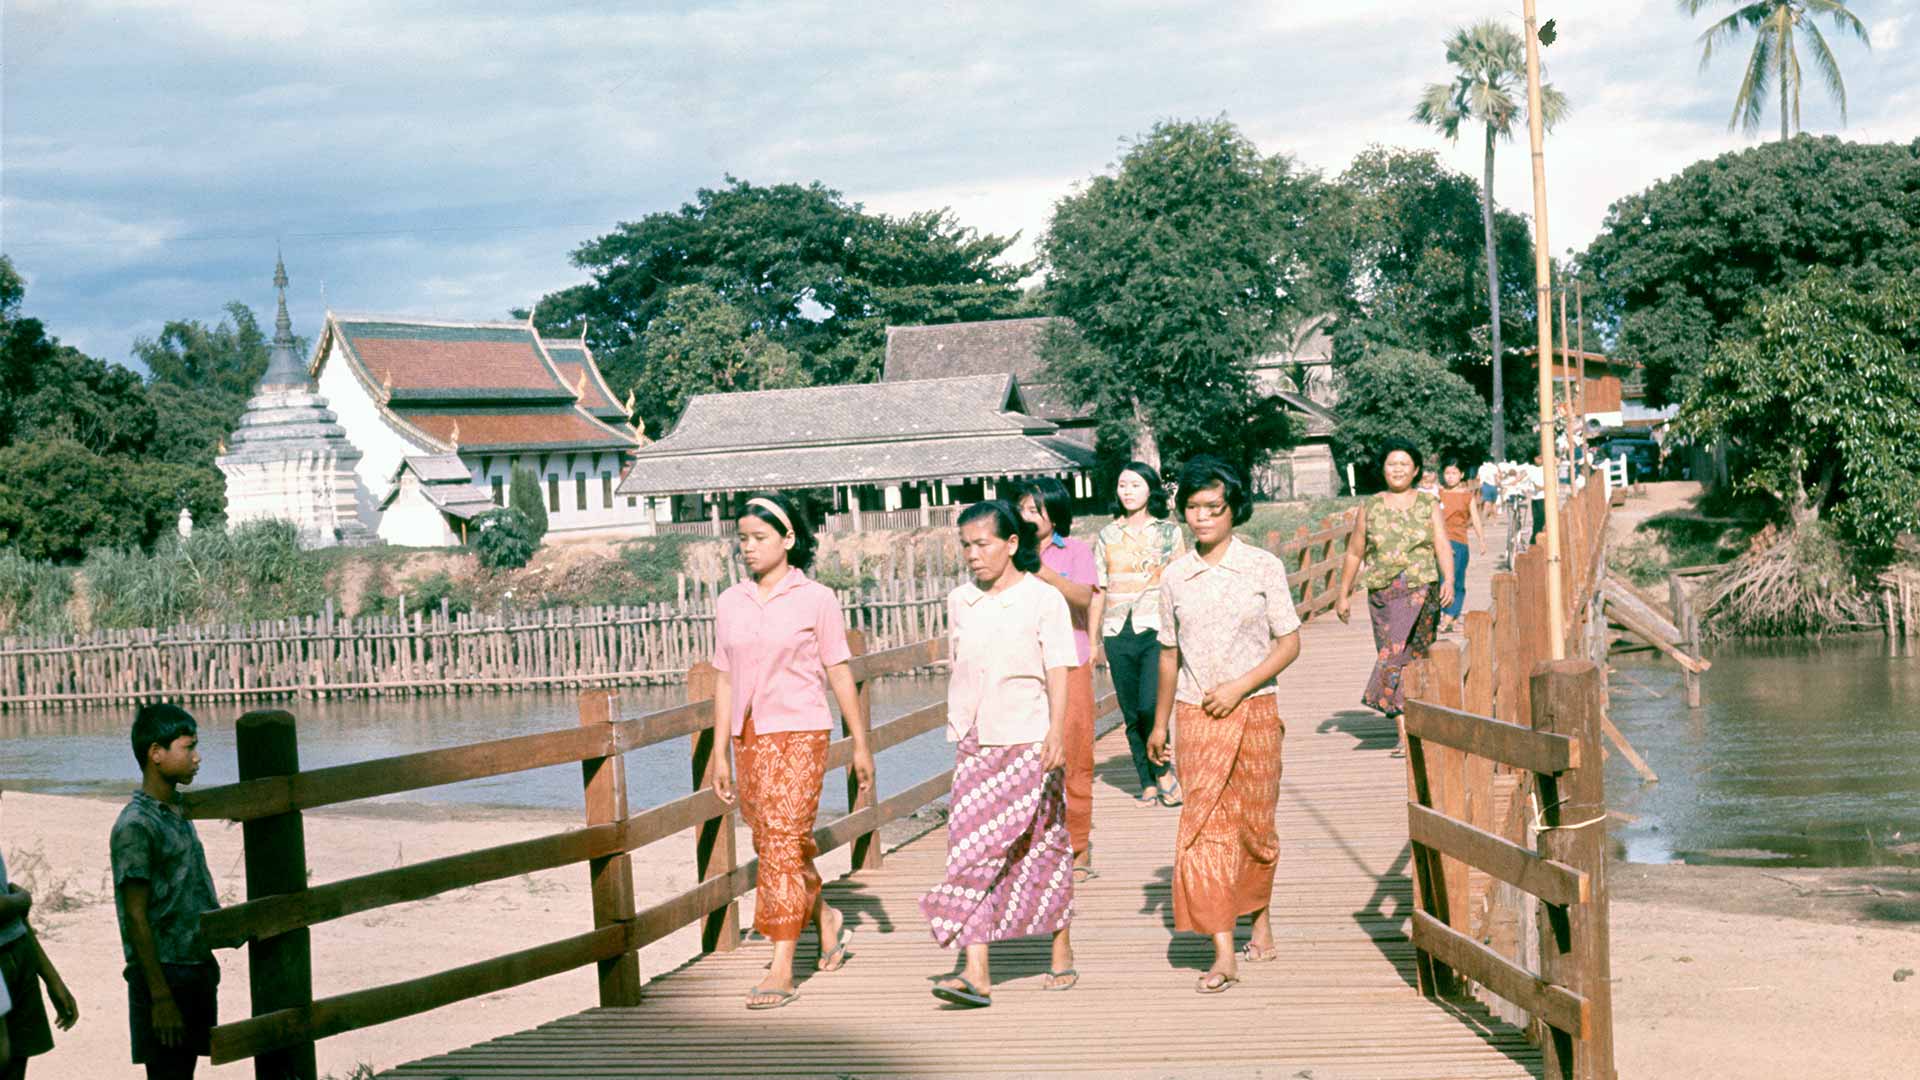 women cross a wooden pedestrian bridge